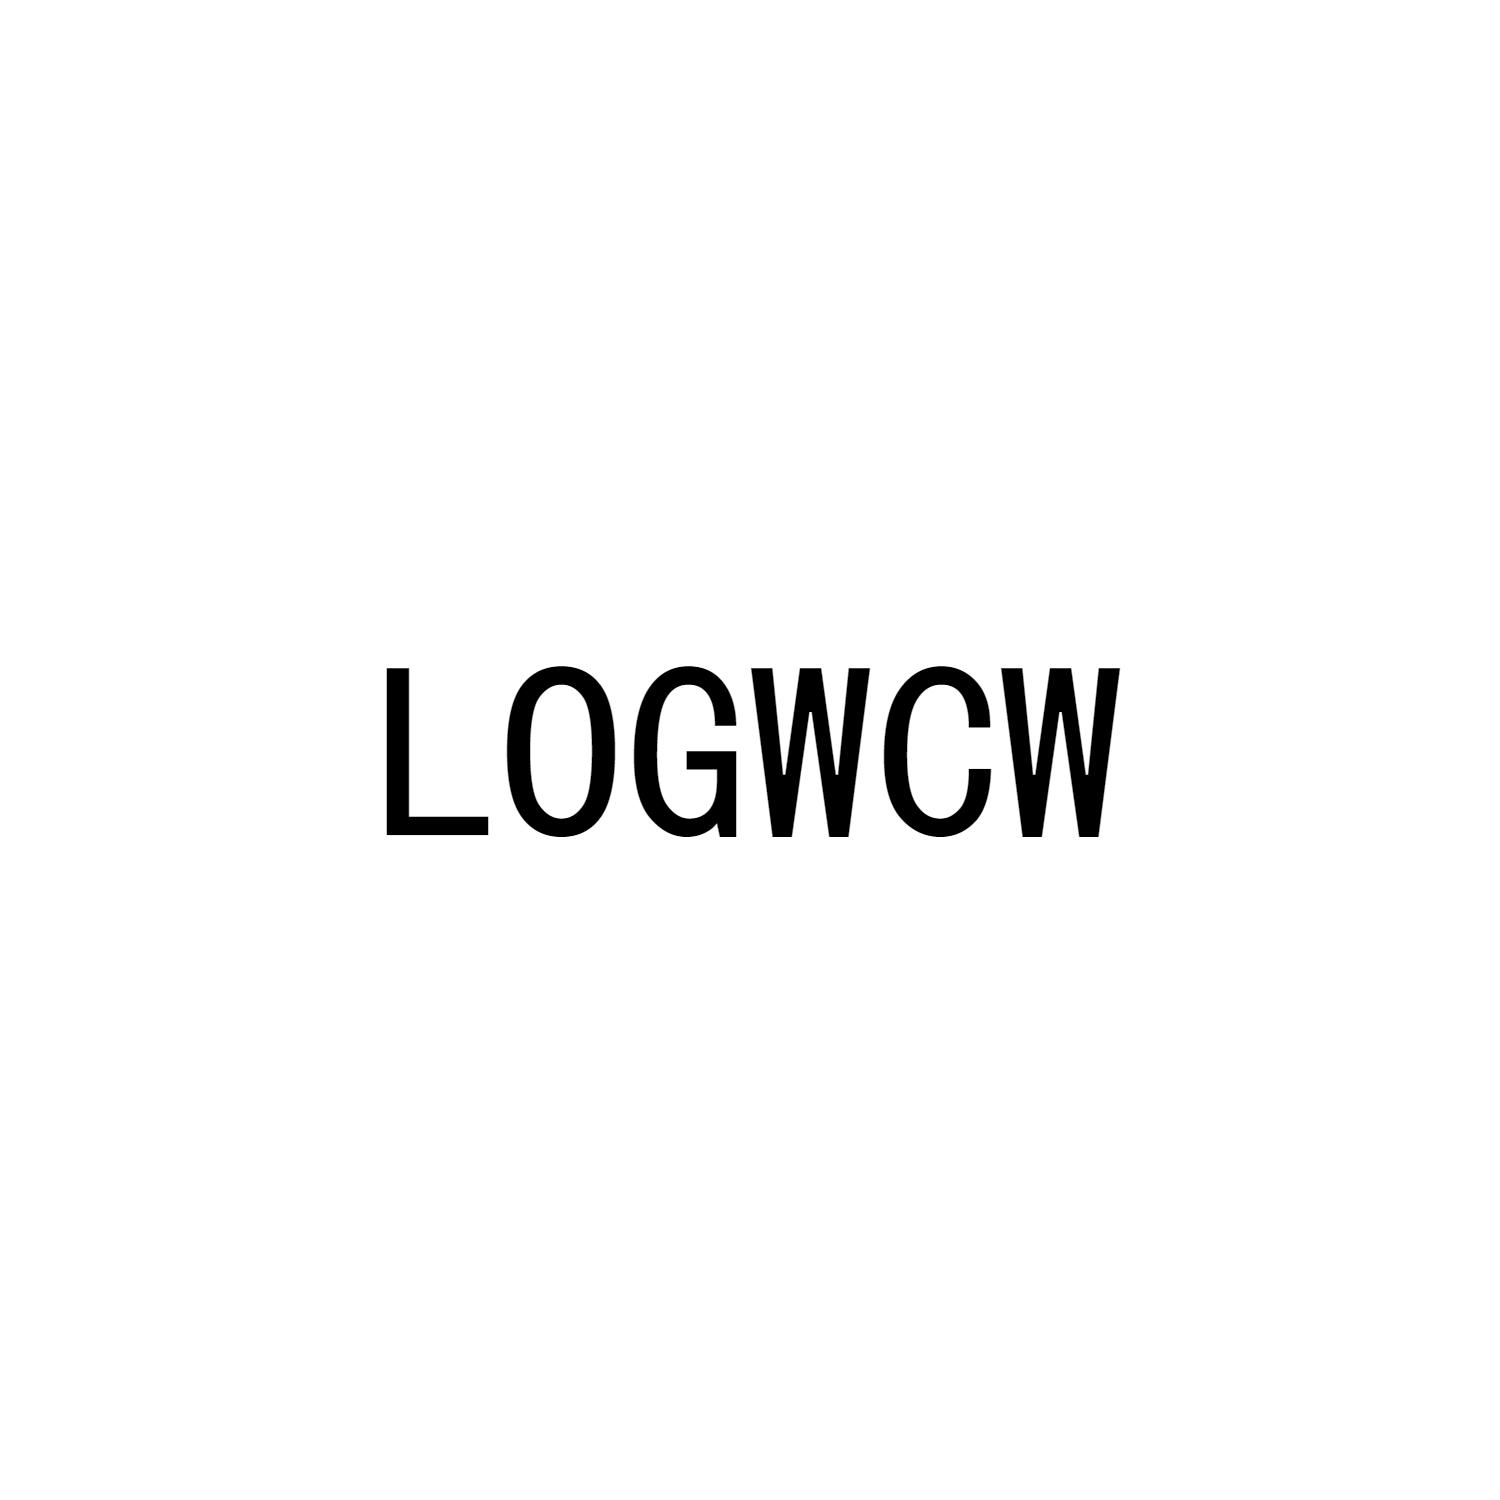 LOGWCW